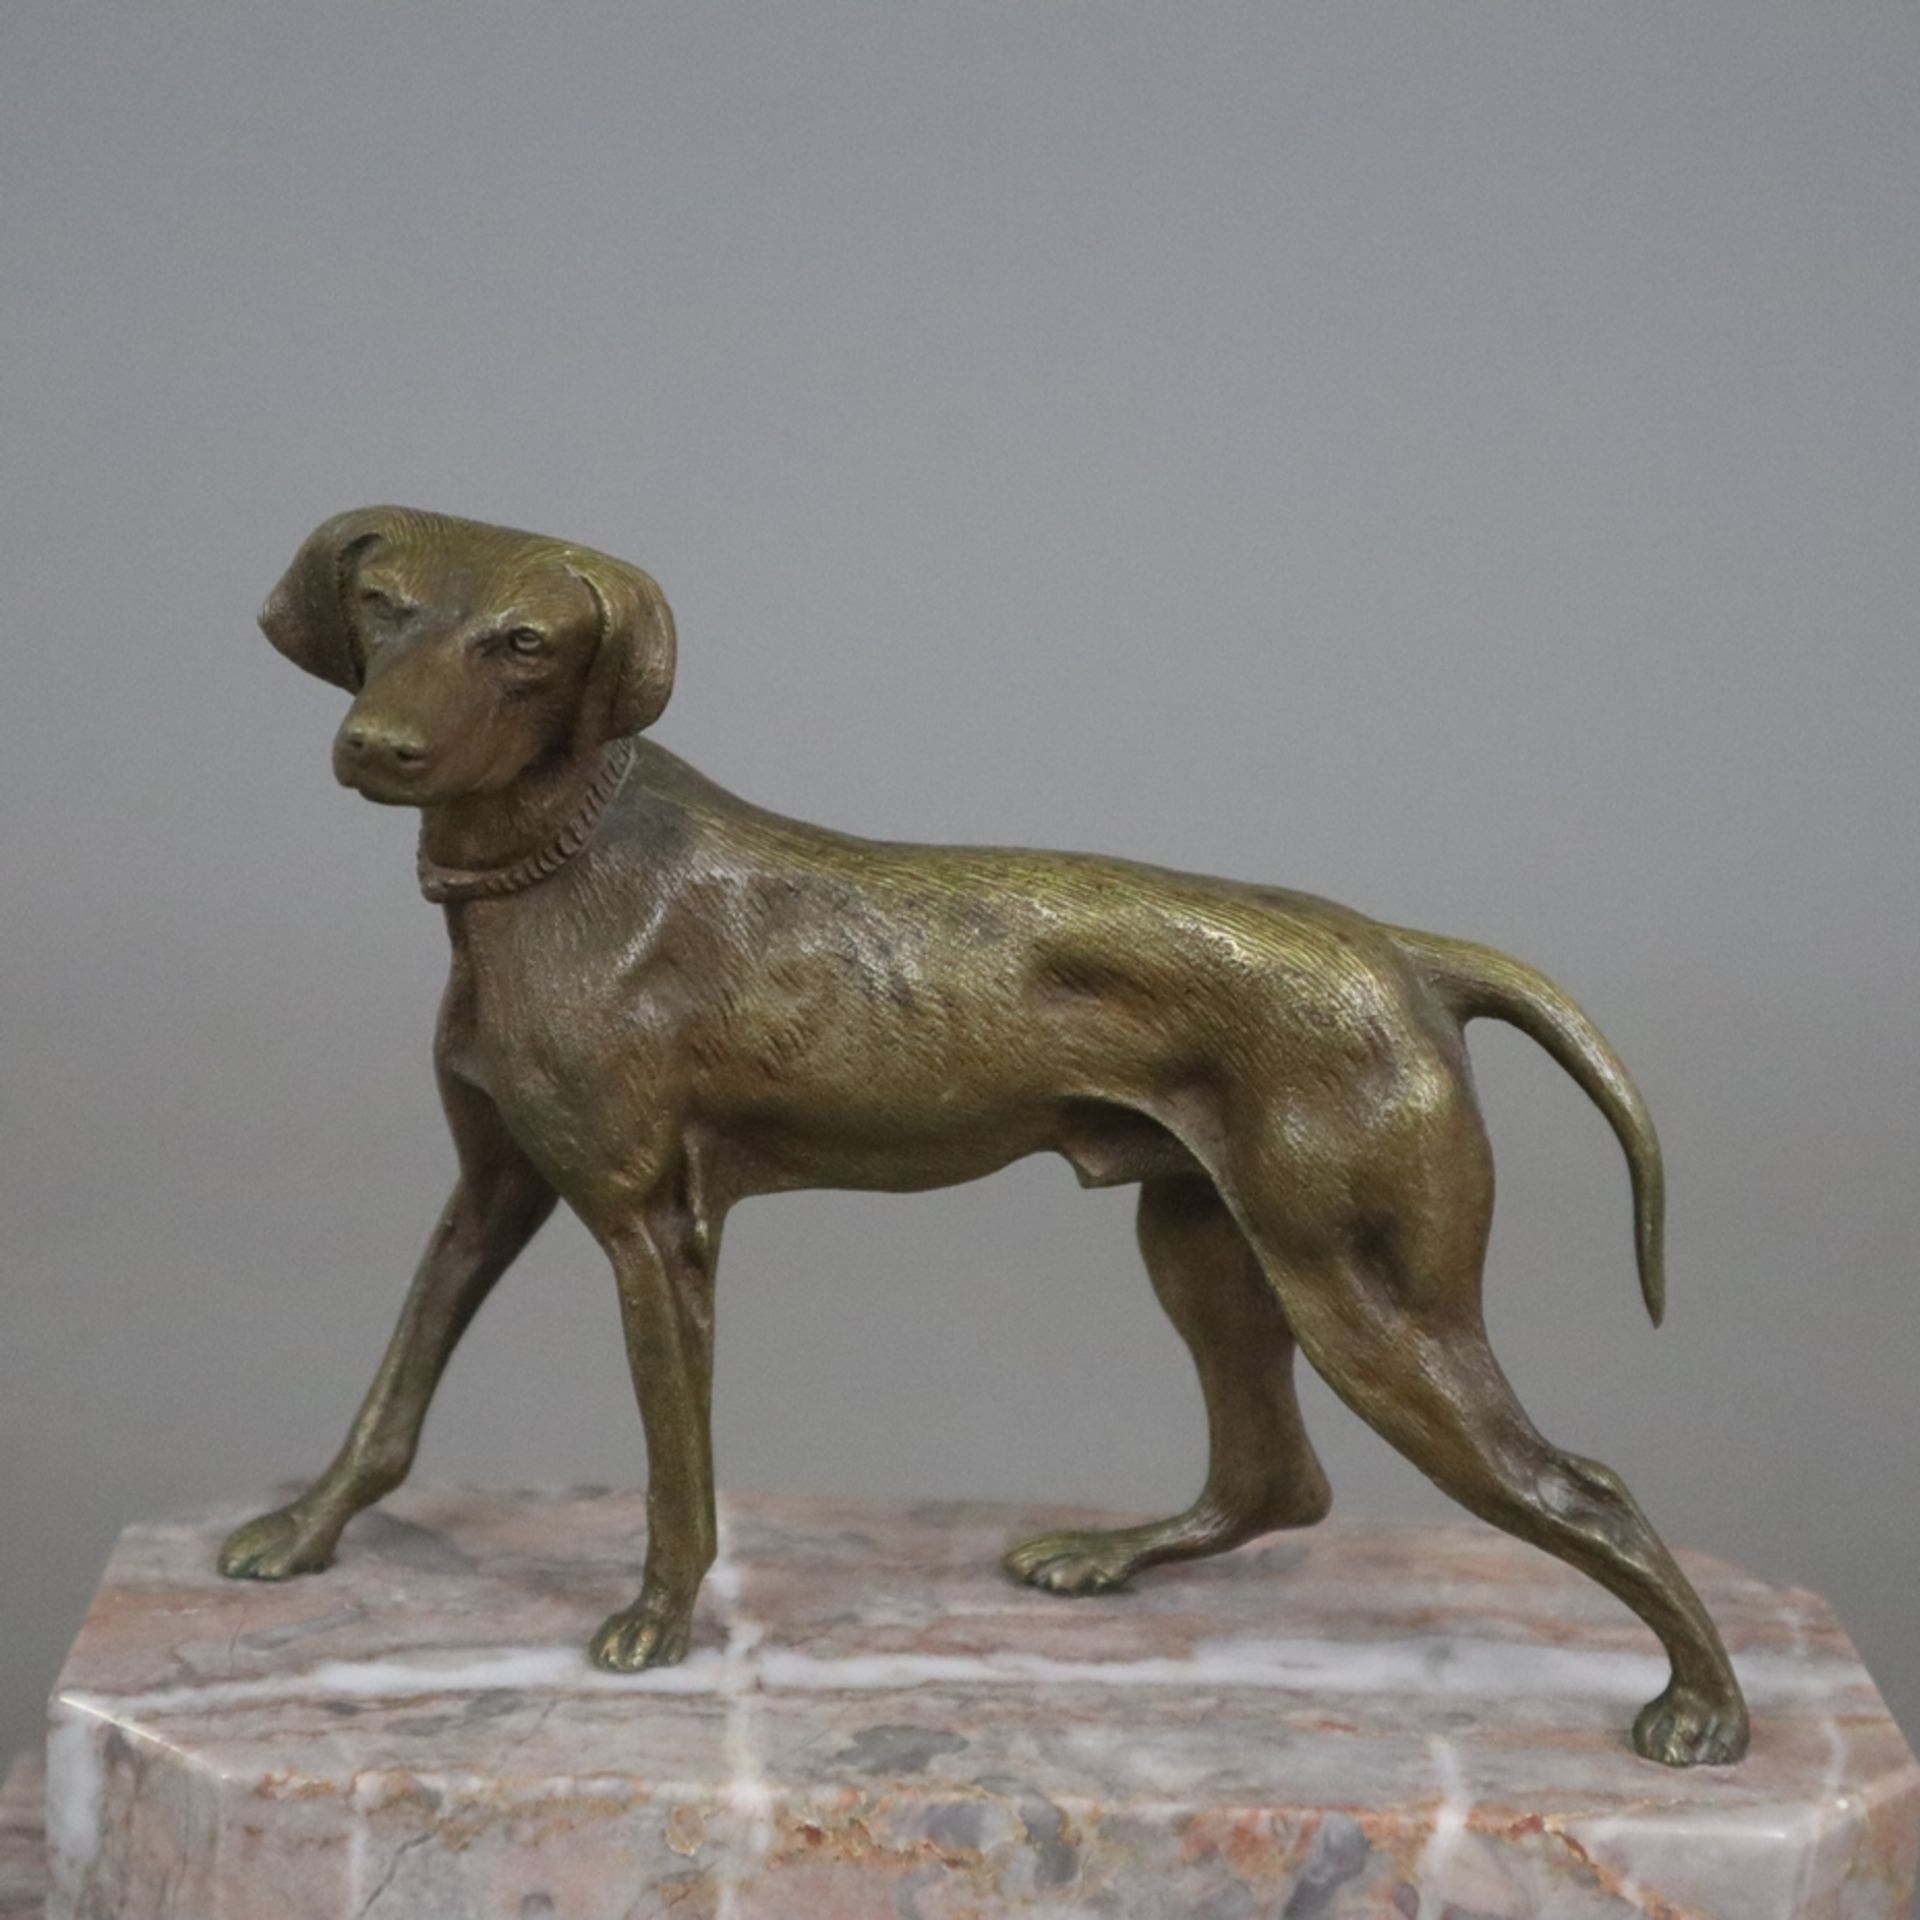 Tierskulptur "Jagdhund" - Bronze, braun patiniert, naturalistische Darstellung in bewegter Pose, na - Bild 2 aus 6